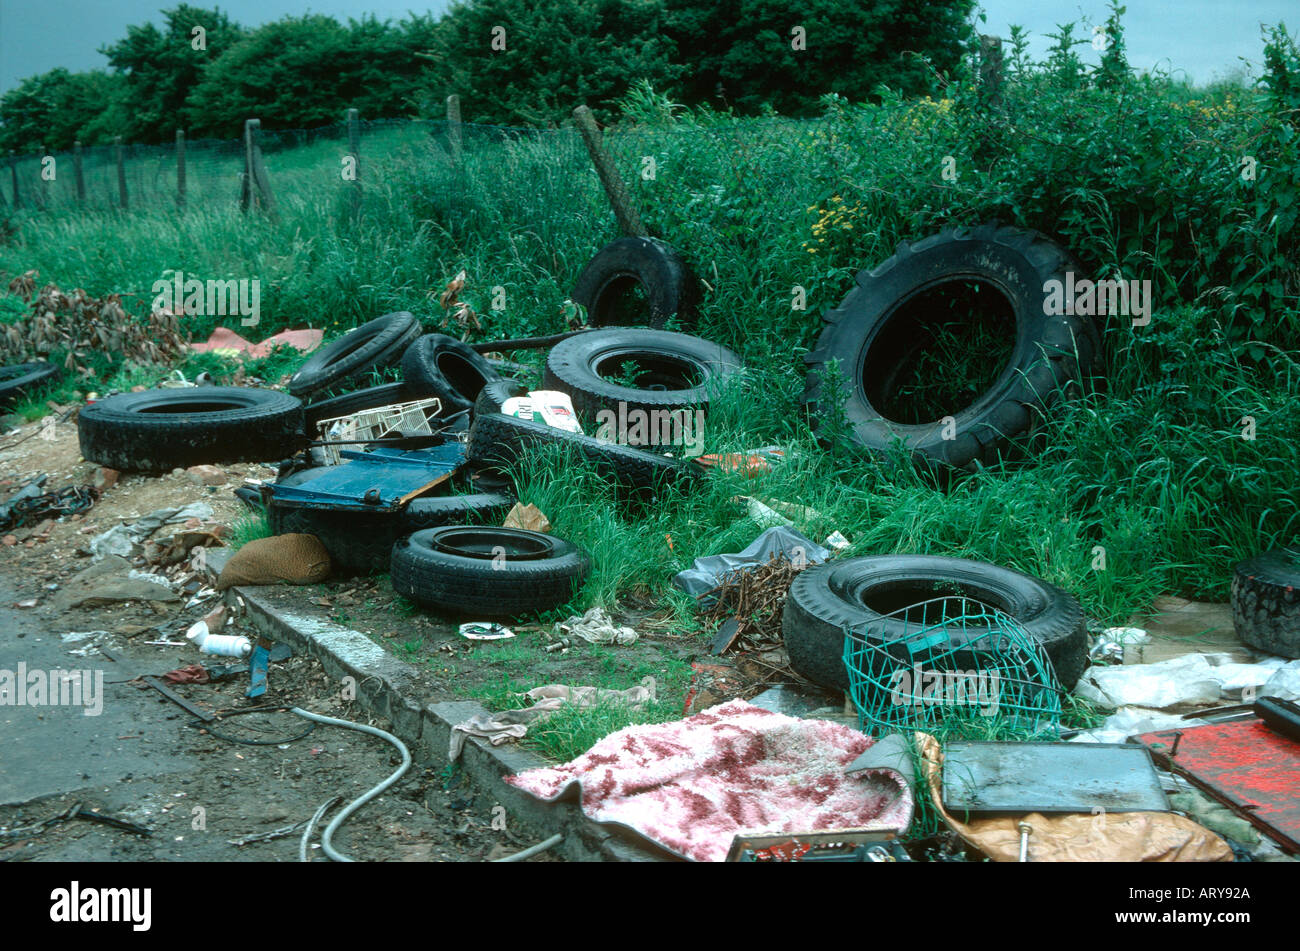 Fliegen Sie, Kippen der alten Reifen und anderem Müll am Straßenrand Vororte in London UK Stockfoto